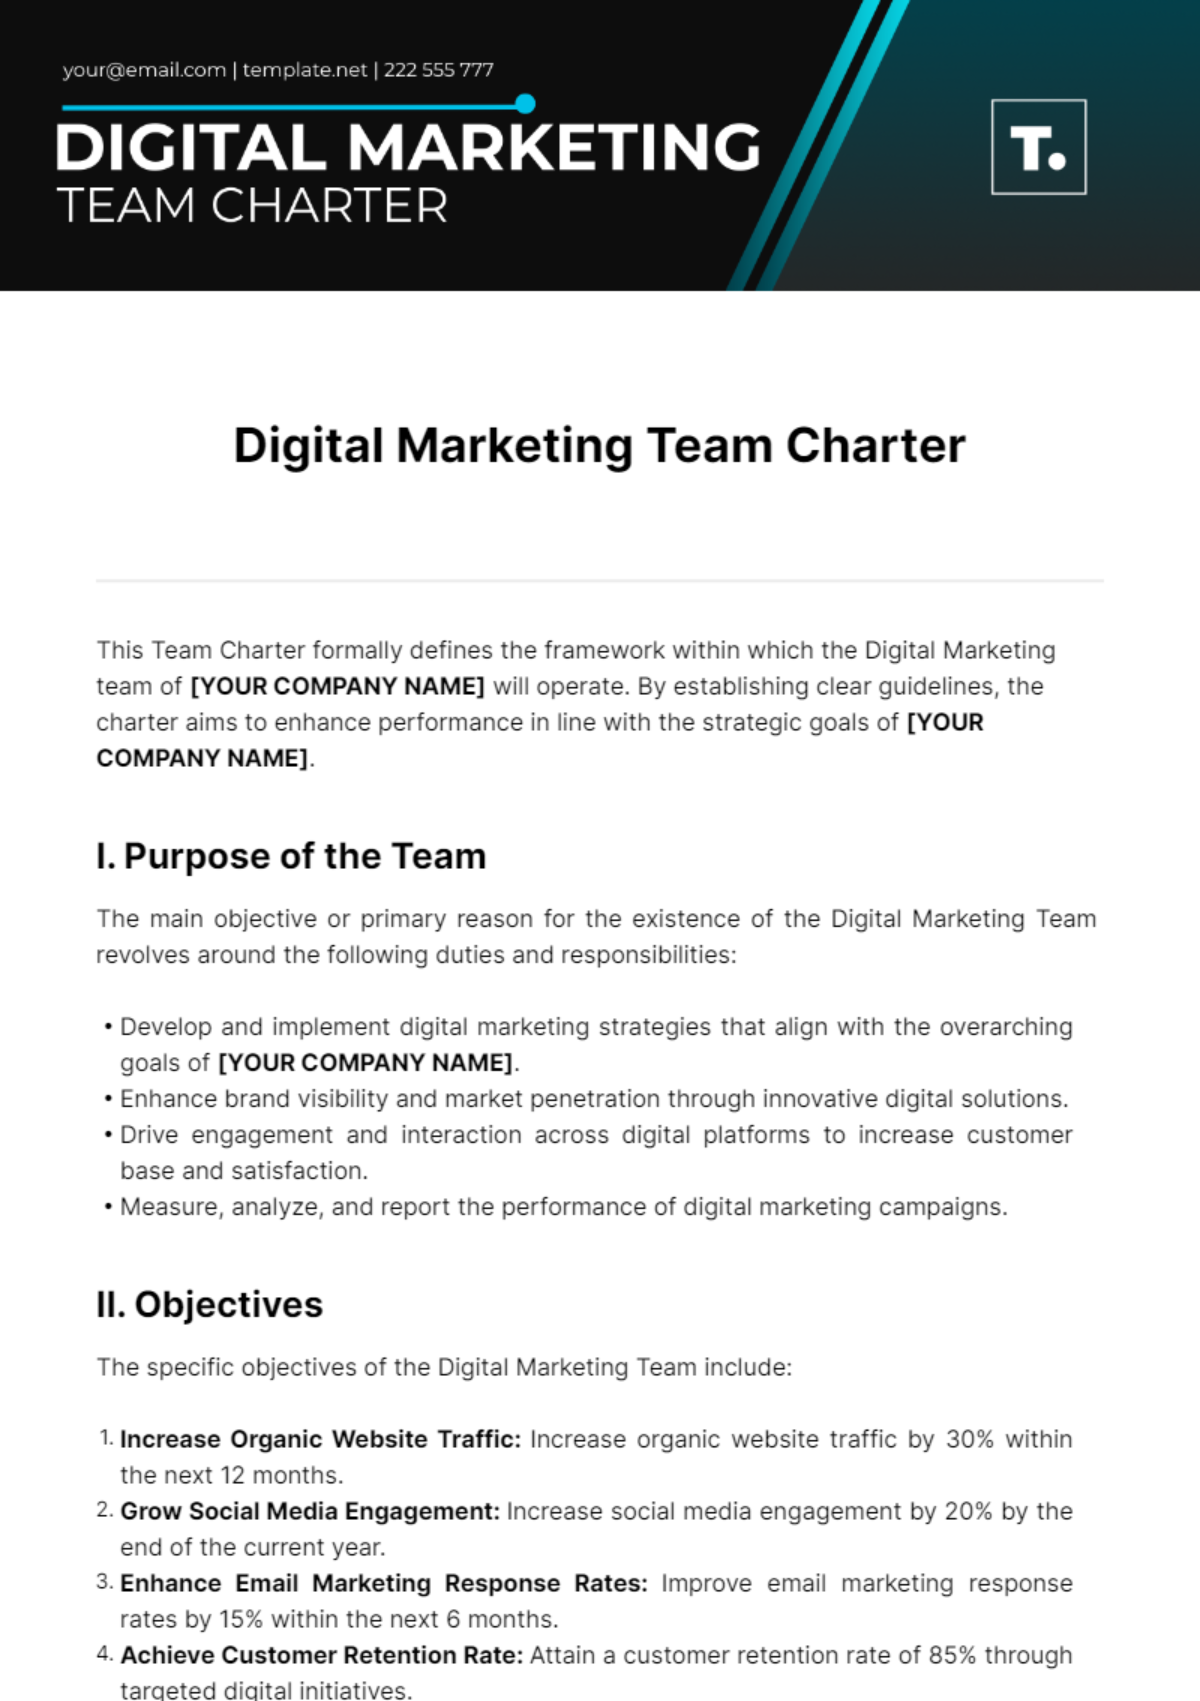 Digital Marketing Team Charter Template